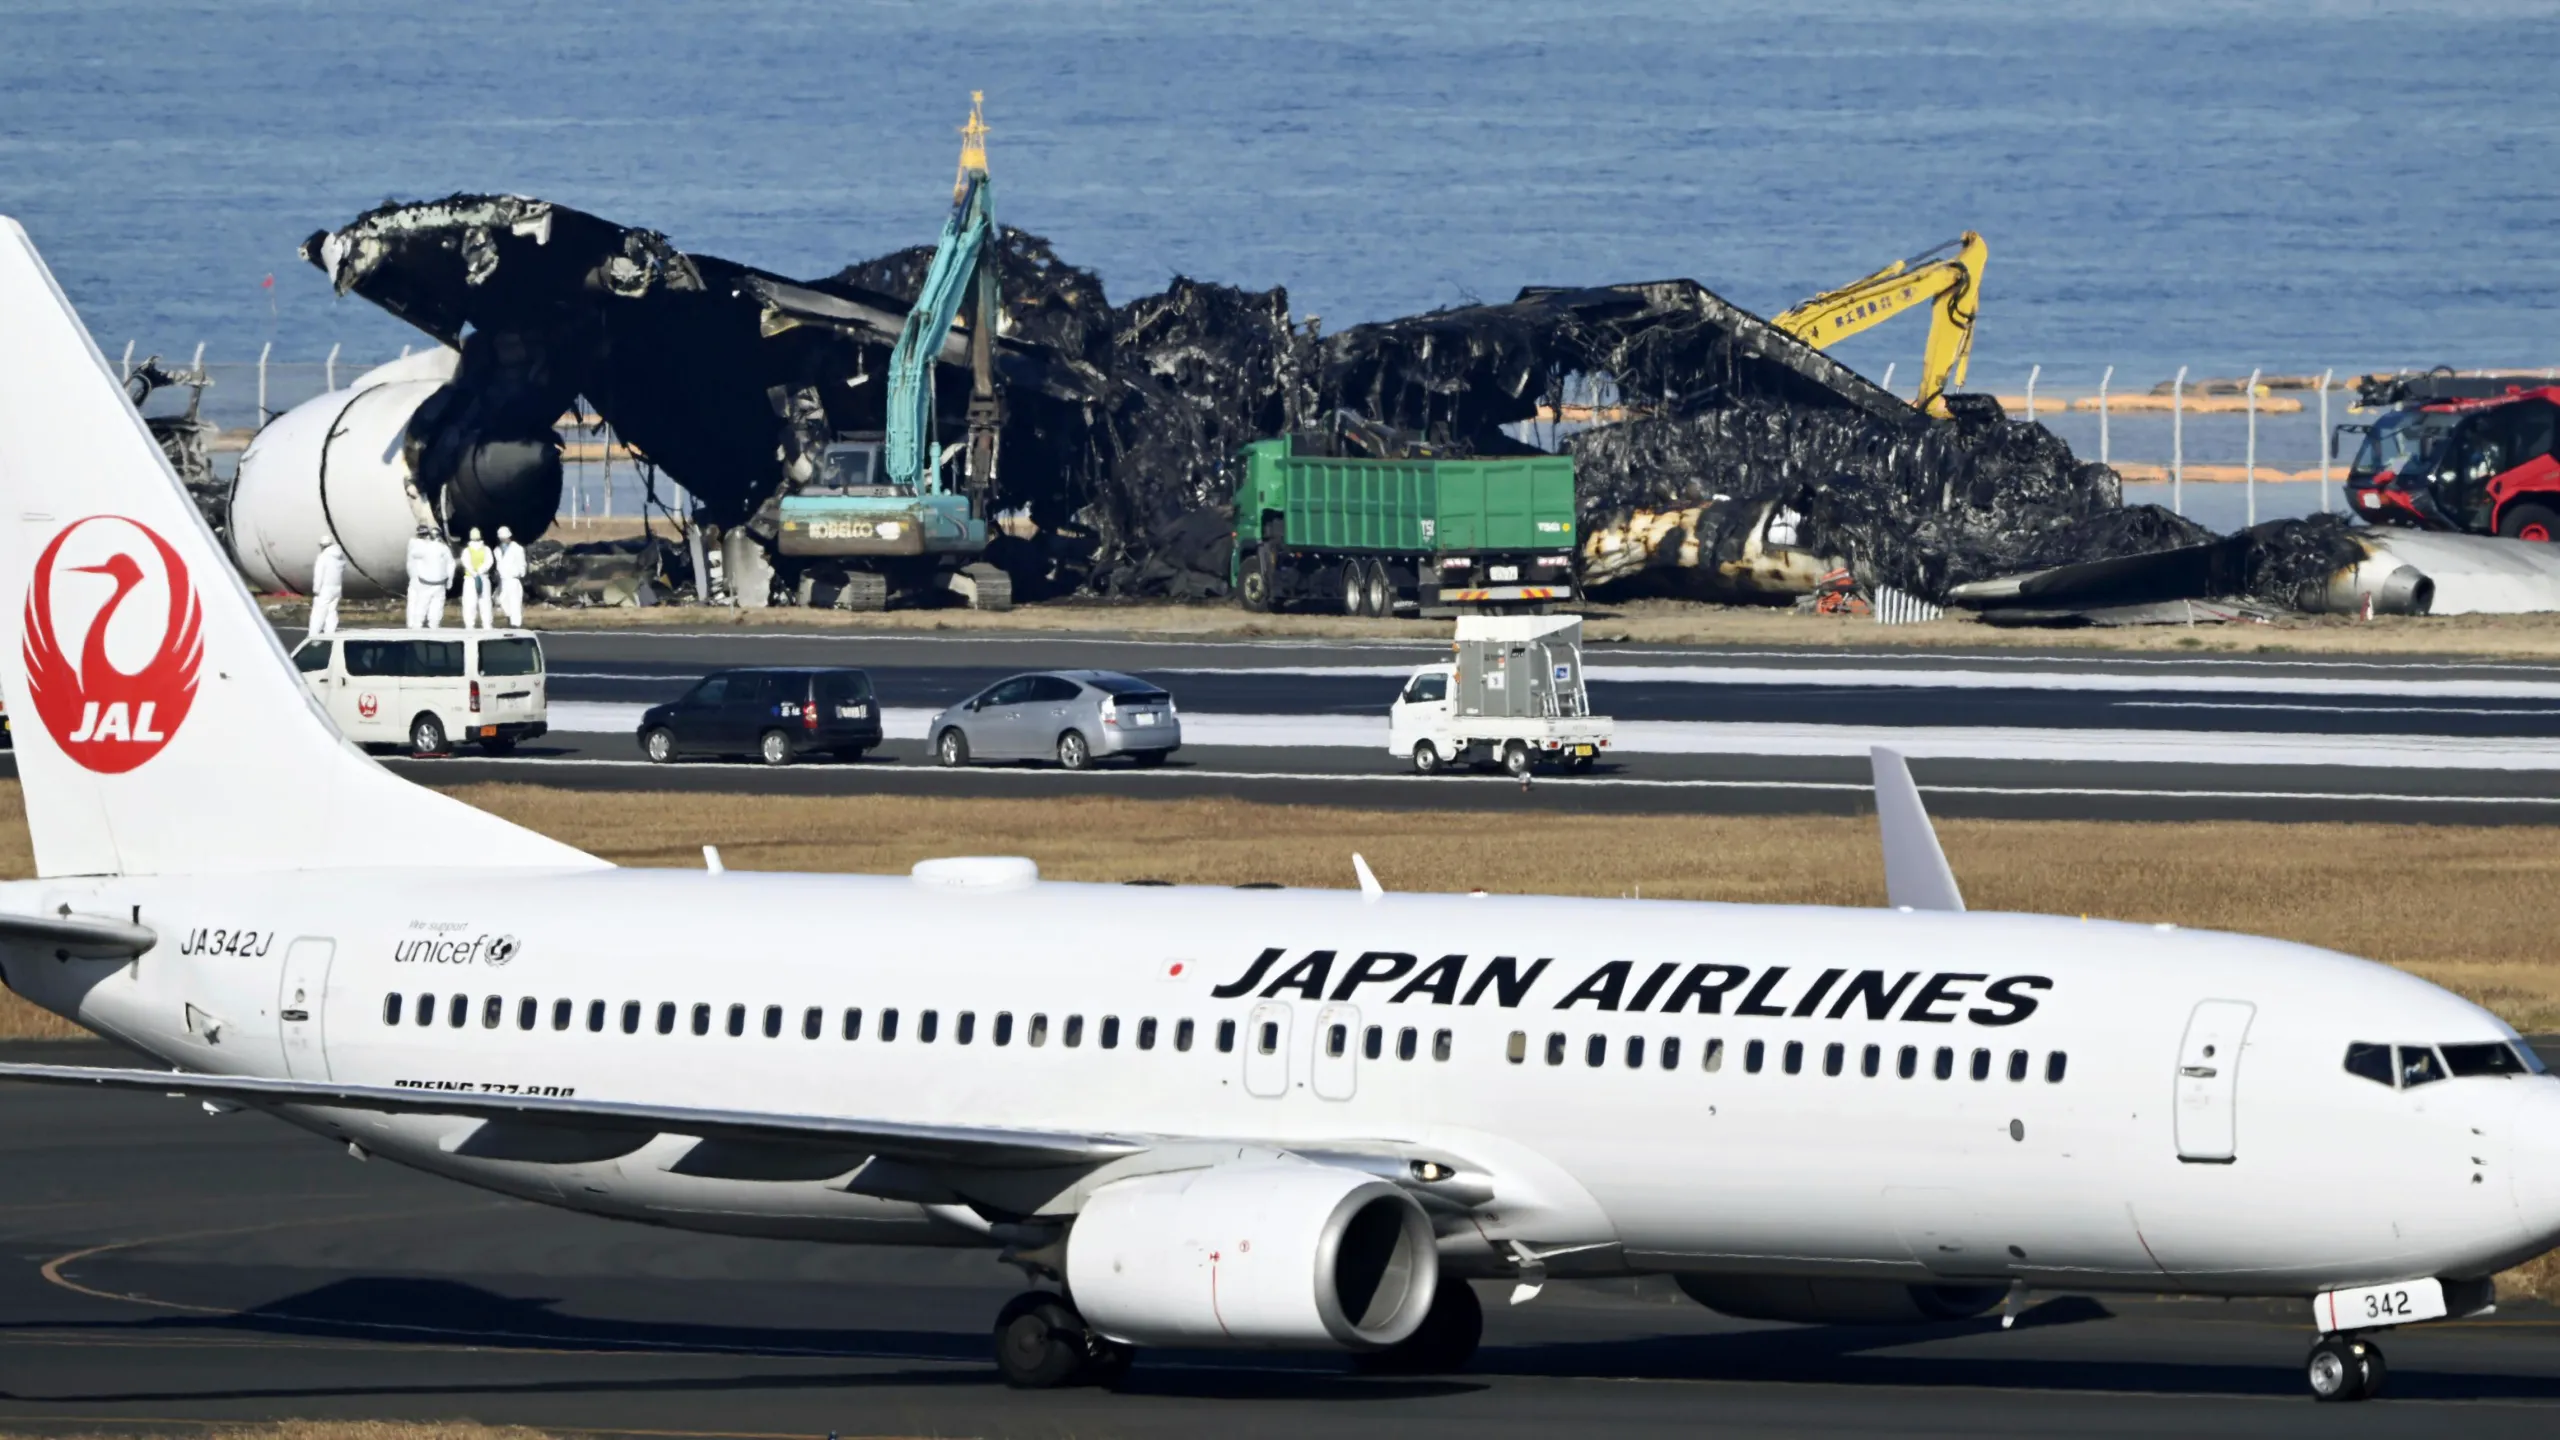 Runway at Tokyo’s Haneda Airport reopens after aircraft collision